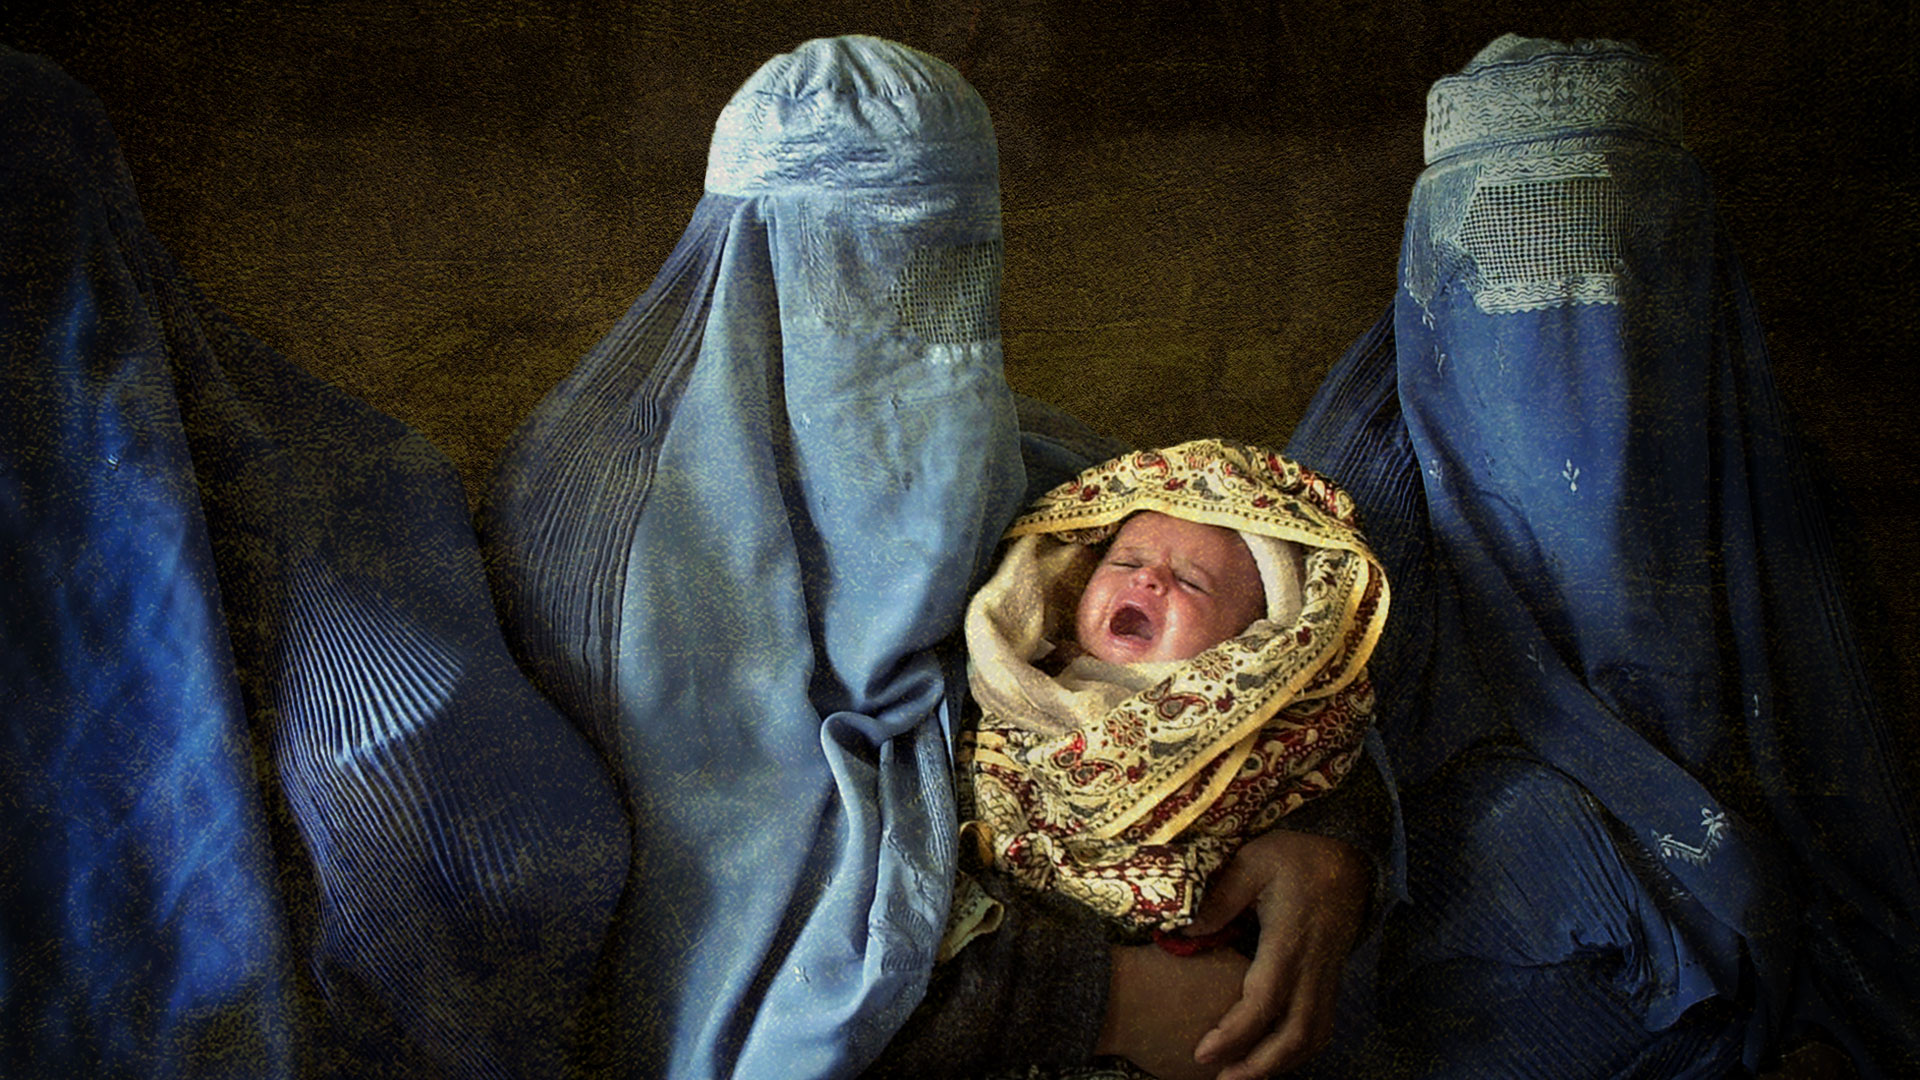 Mujeres afganas con burkas y un bebé, ilustración